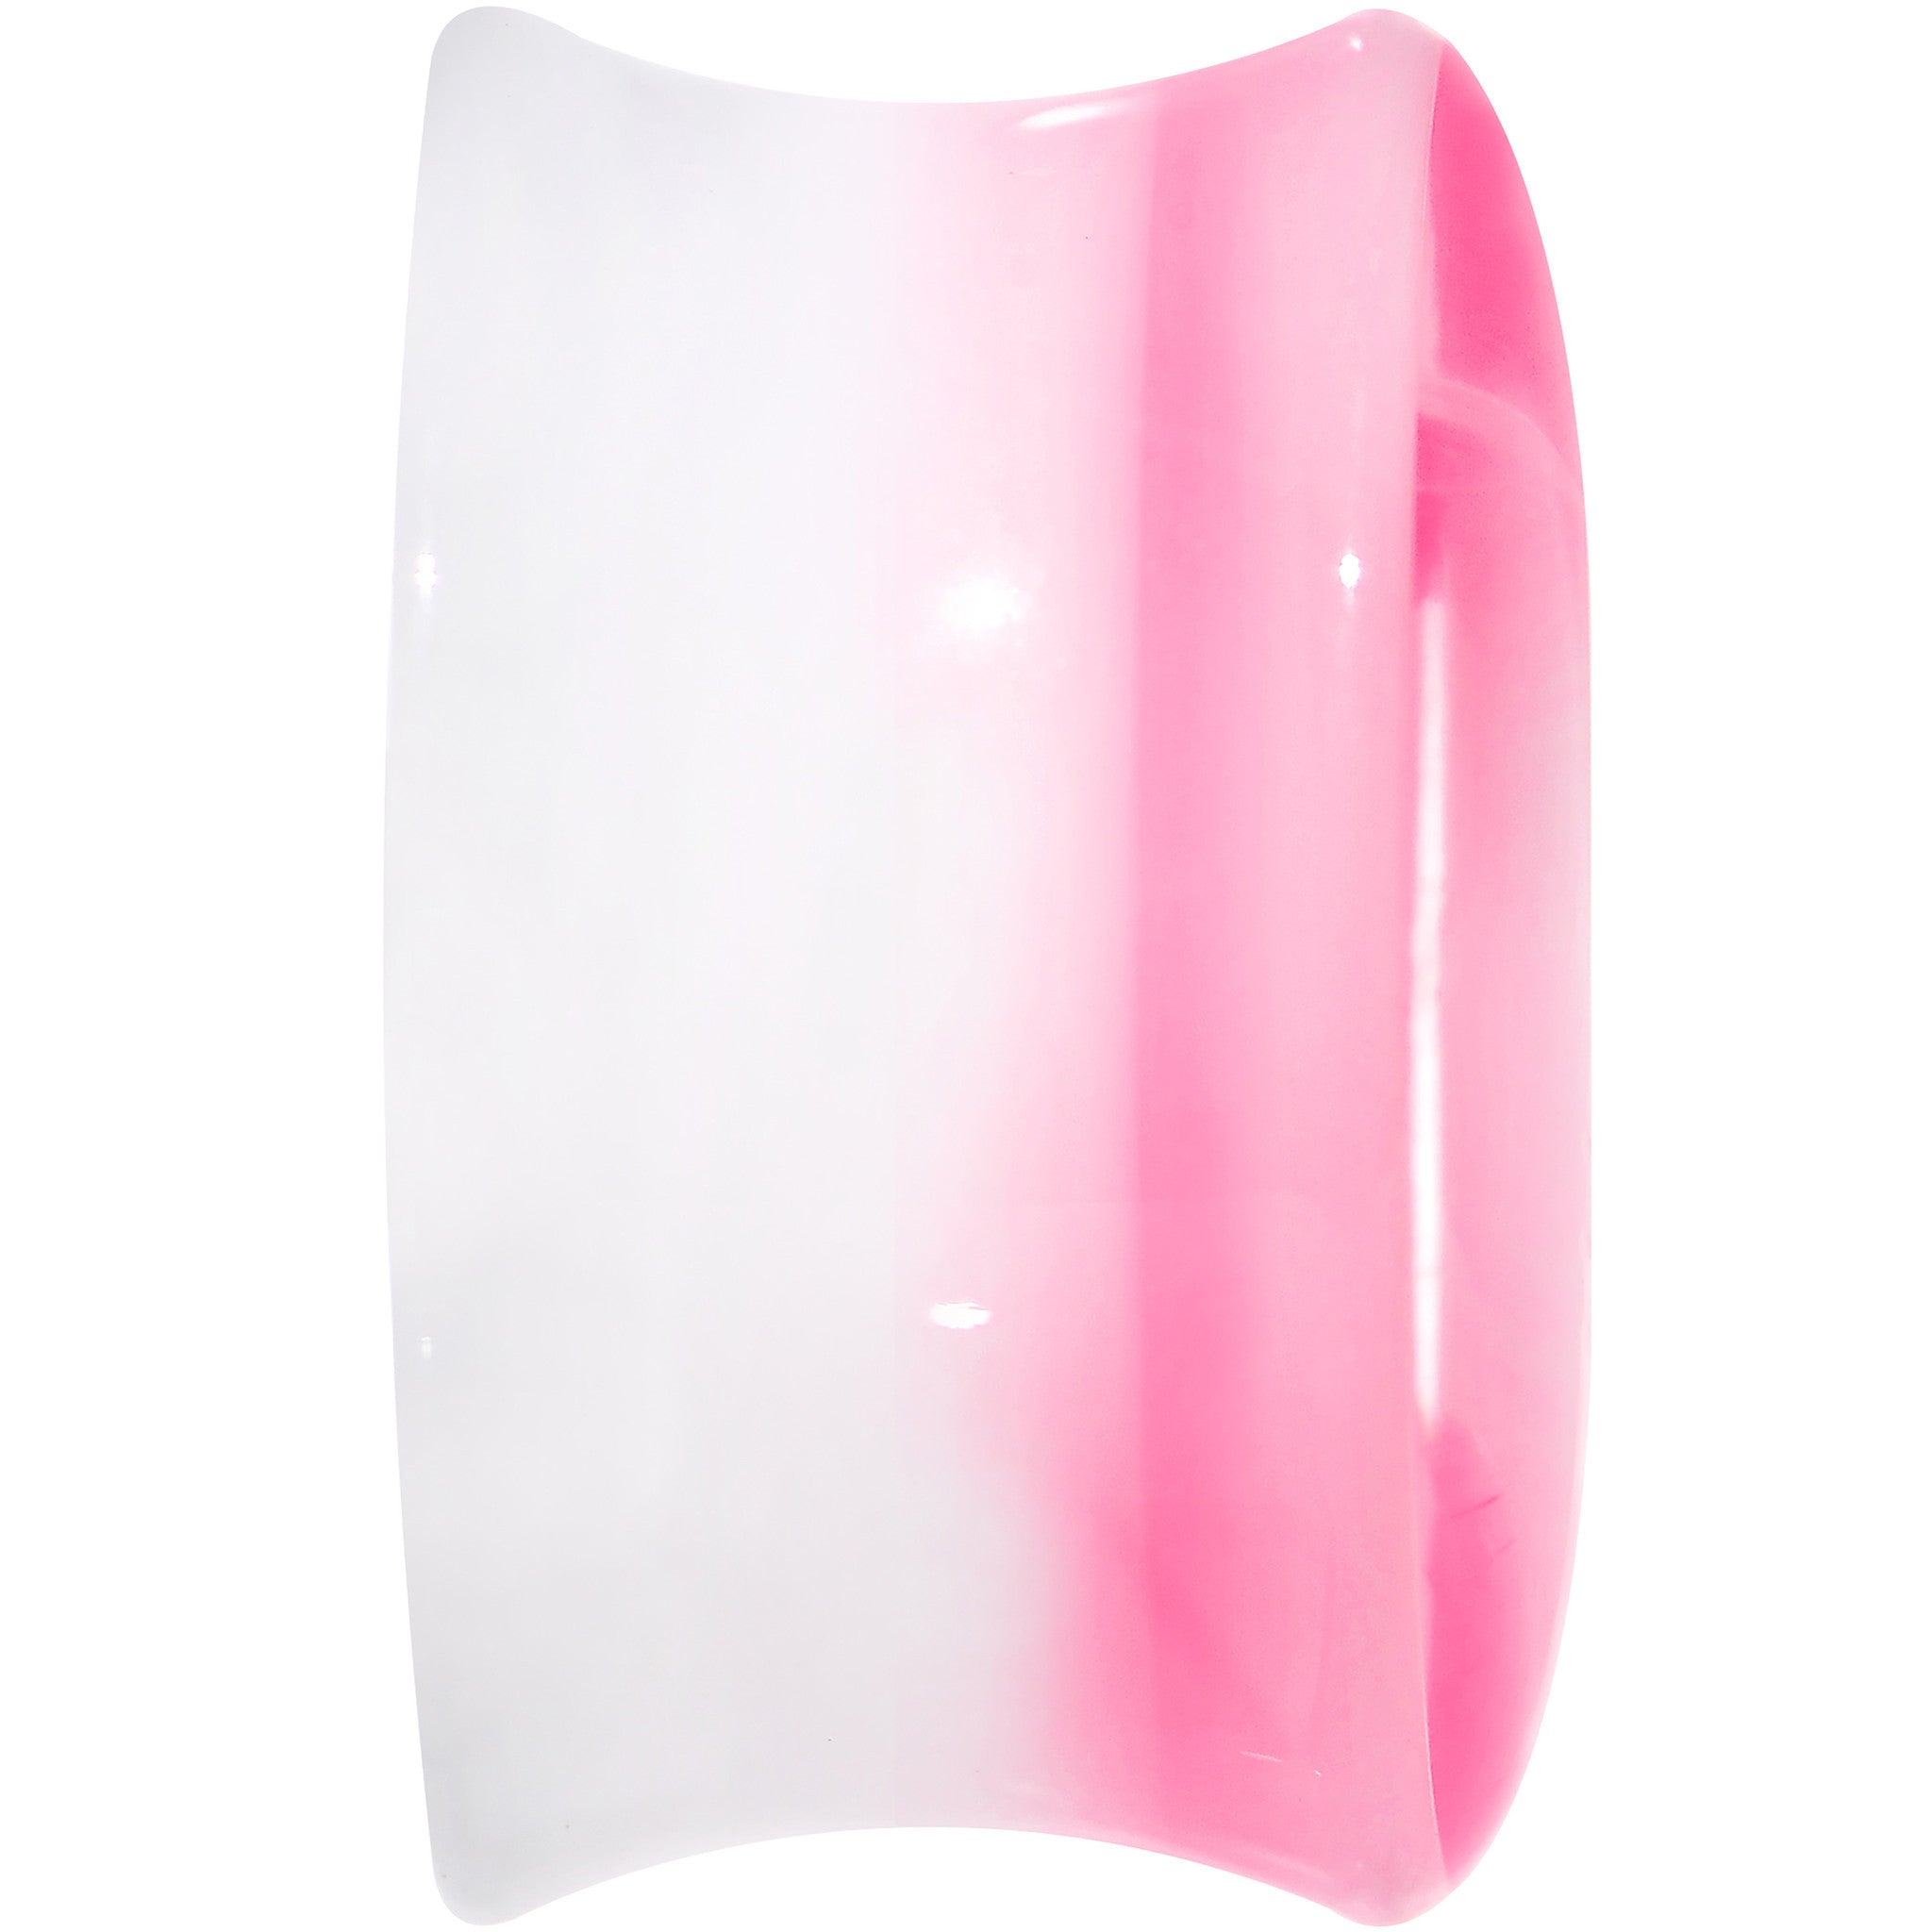 18mm White Pink Acrylic Adoring Heart Saddle Plug